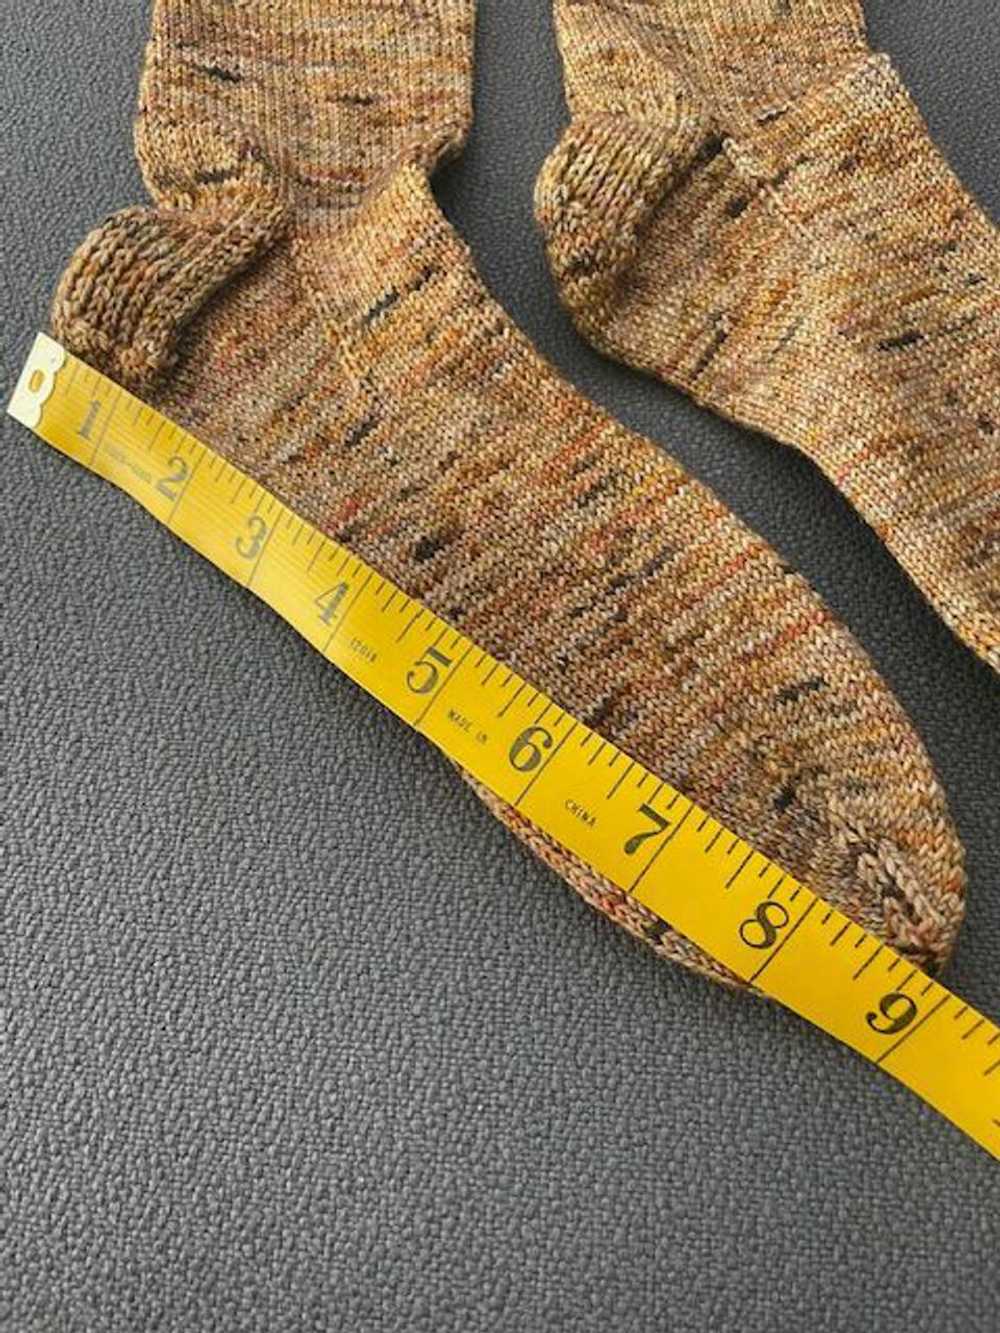 Handmade Hand knit socks (7.5 - 8) | Used,… - image 5